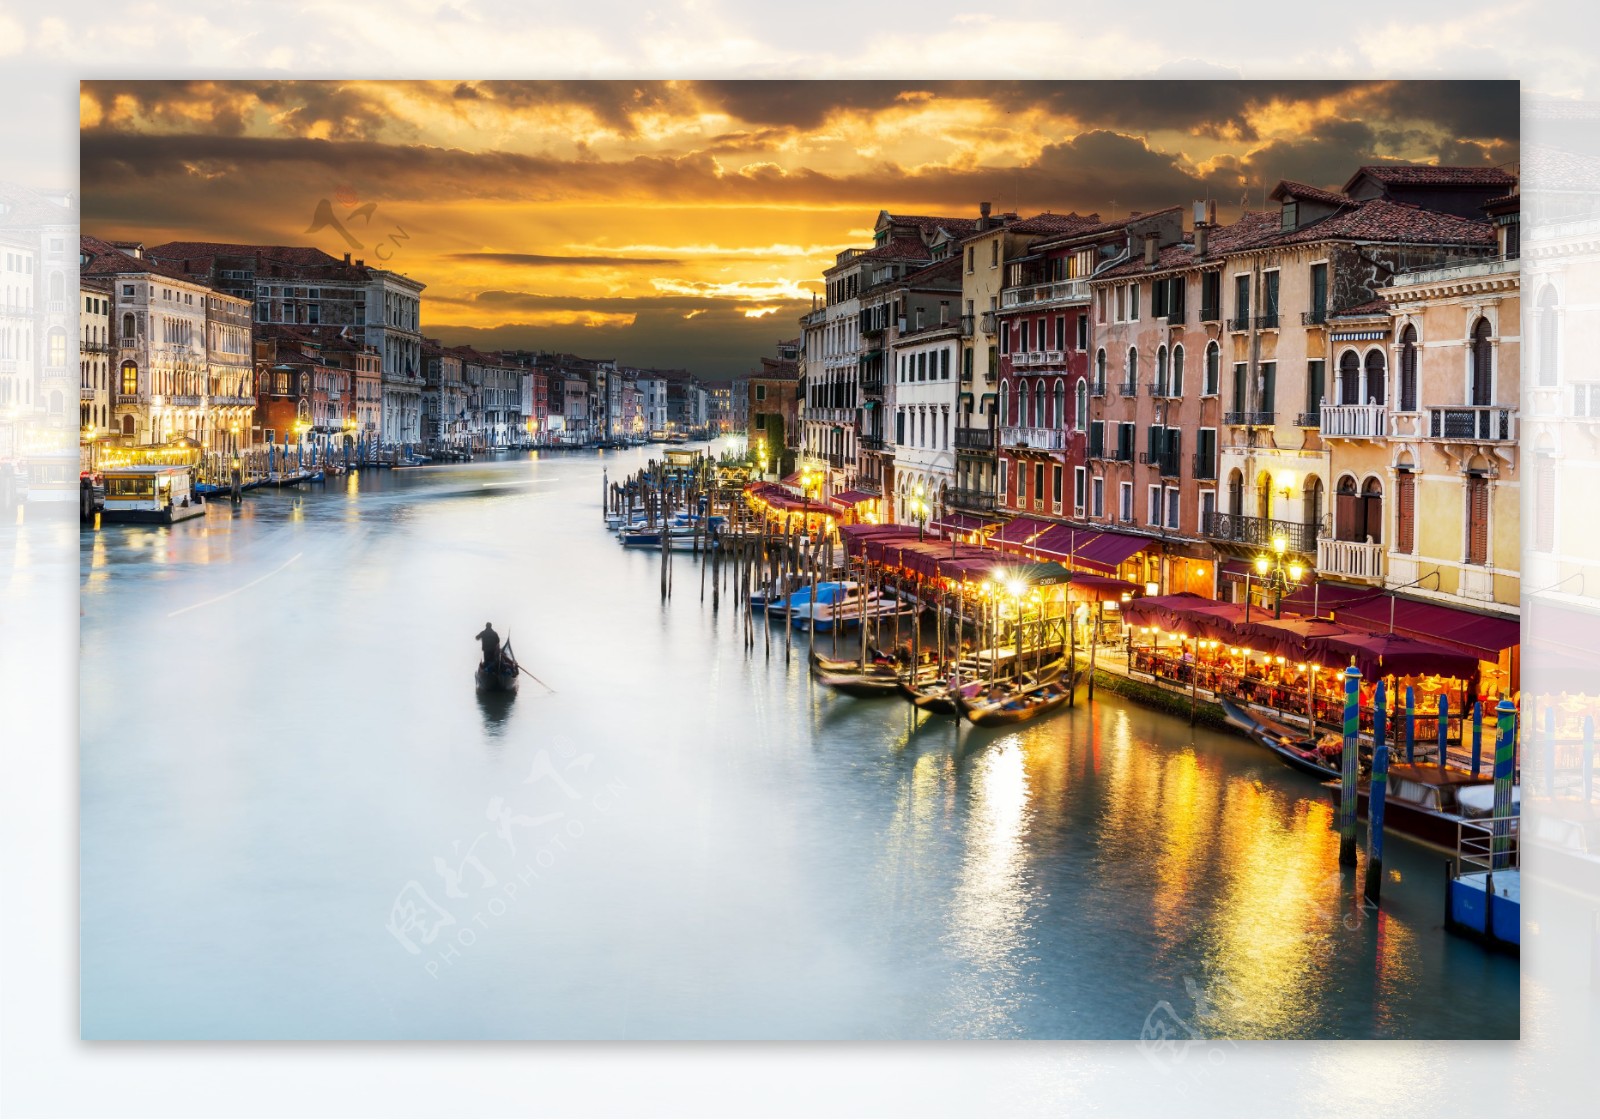 美丽威尼斯河流风景图片